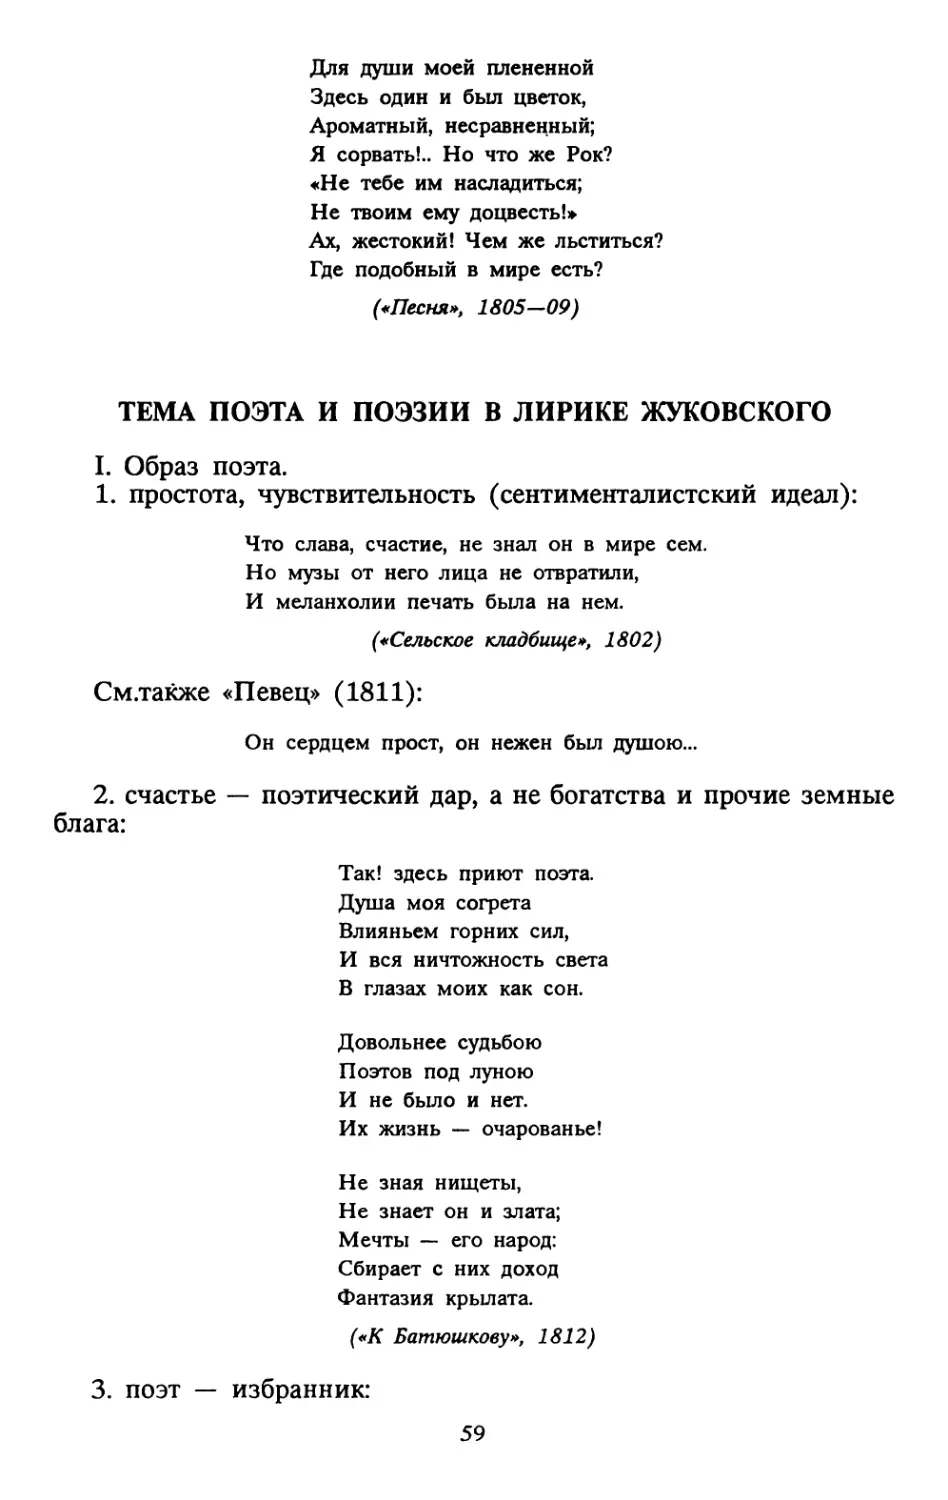 Тема поэта и поэзии в лирике Жуковского